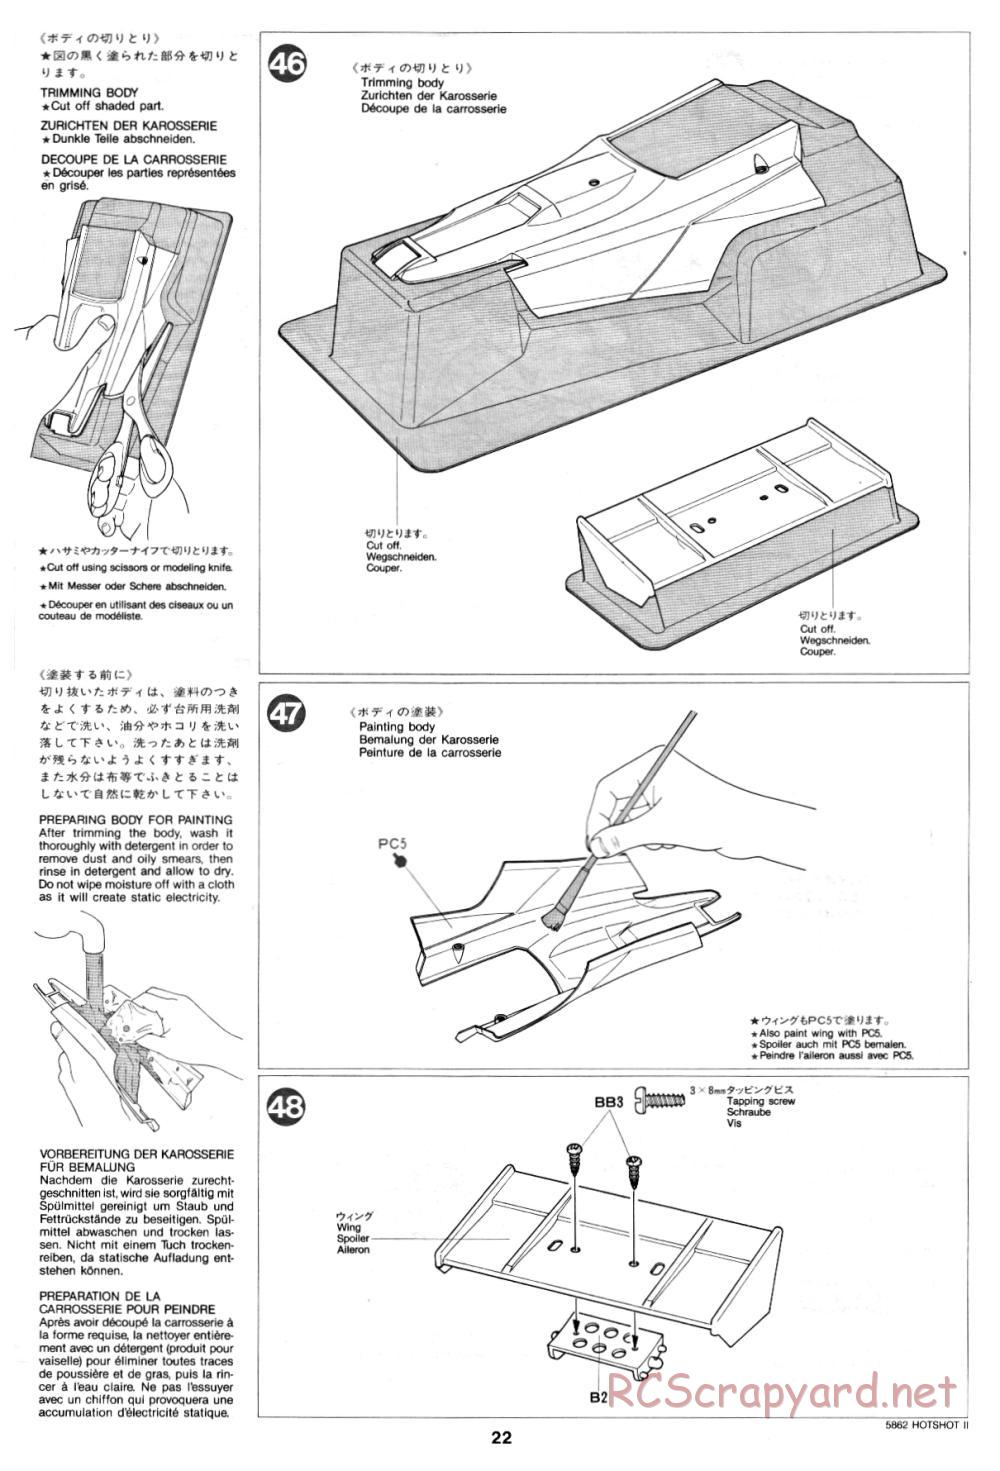 Tamiya - Hot-Shot II - 58062 - Manual - Page 22